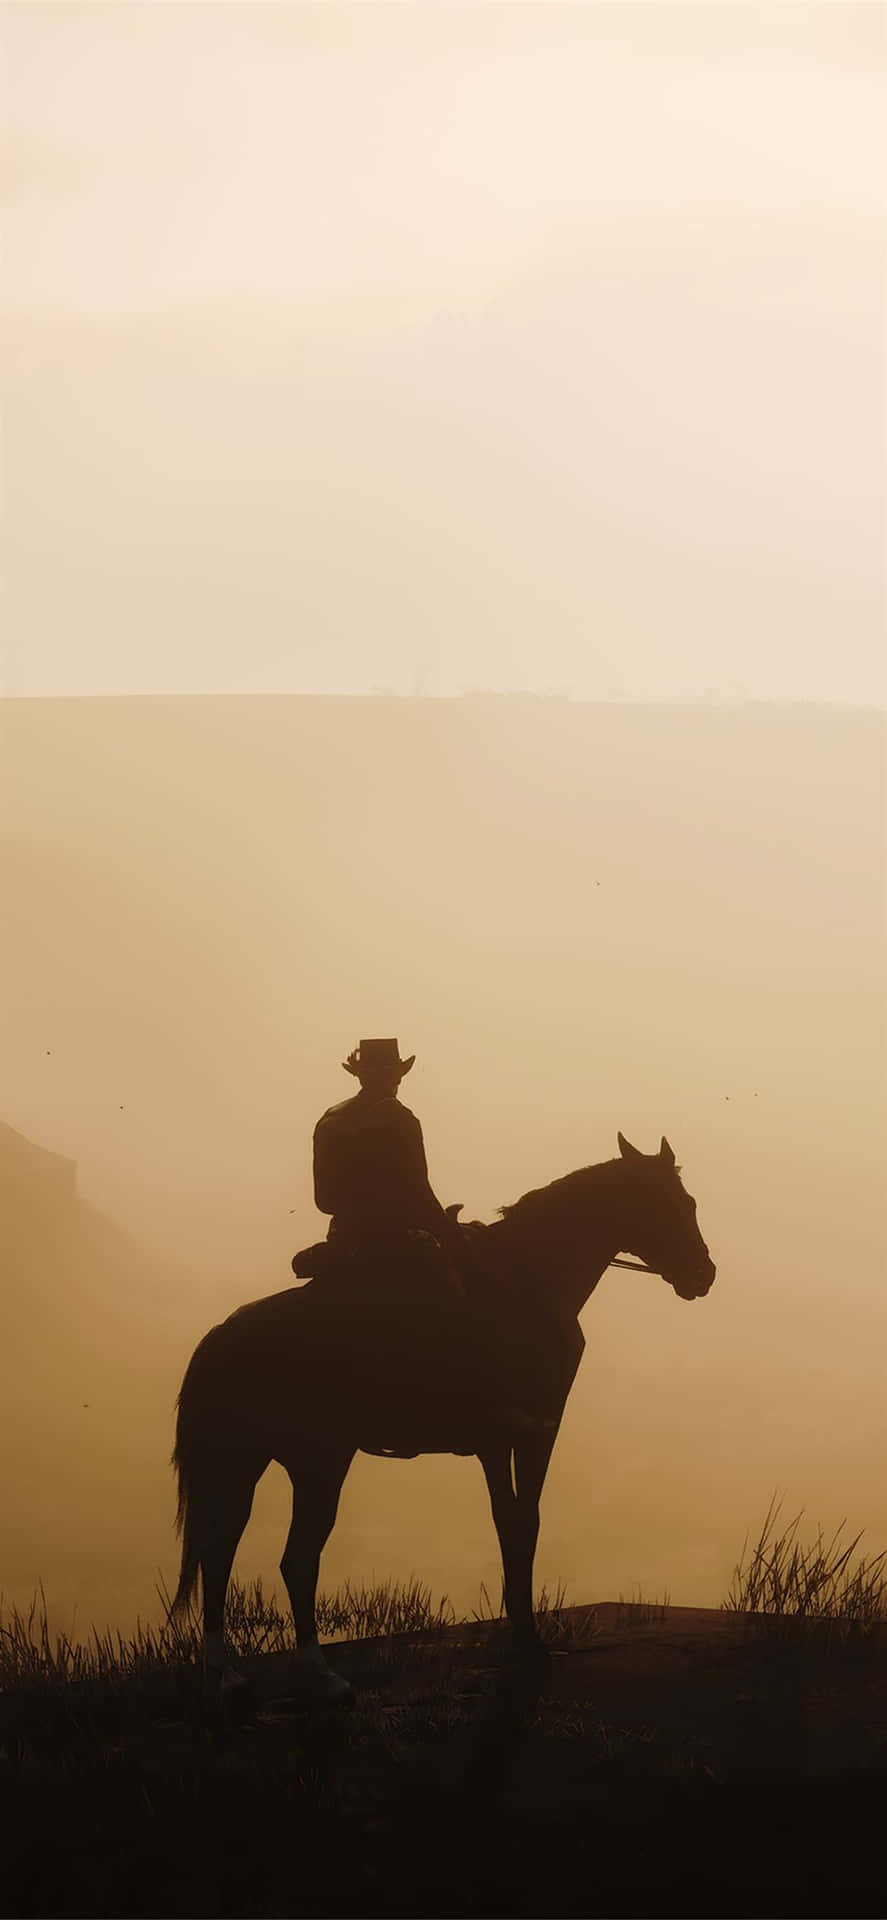 Bästabakgrundsbilden Av Red Dead Redemption 2 Med En Siluett Av En Man På En Häst.